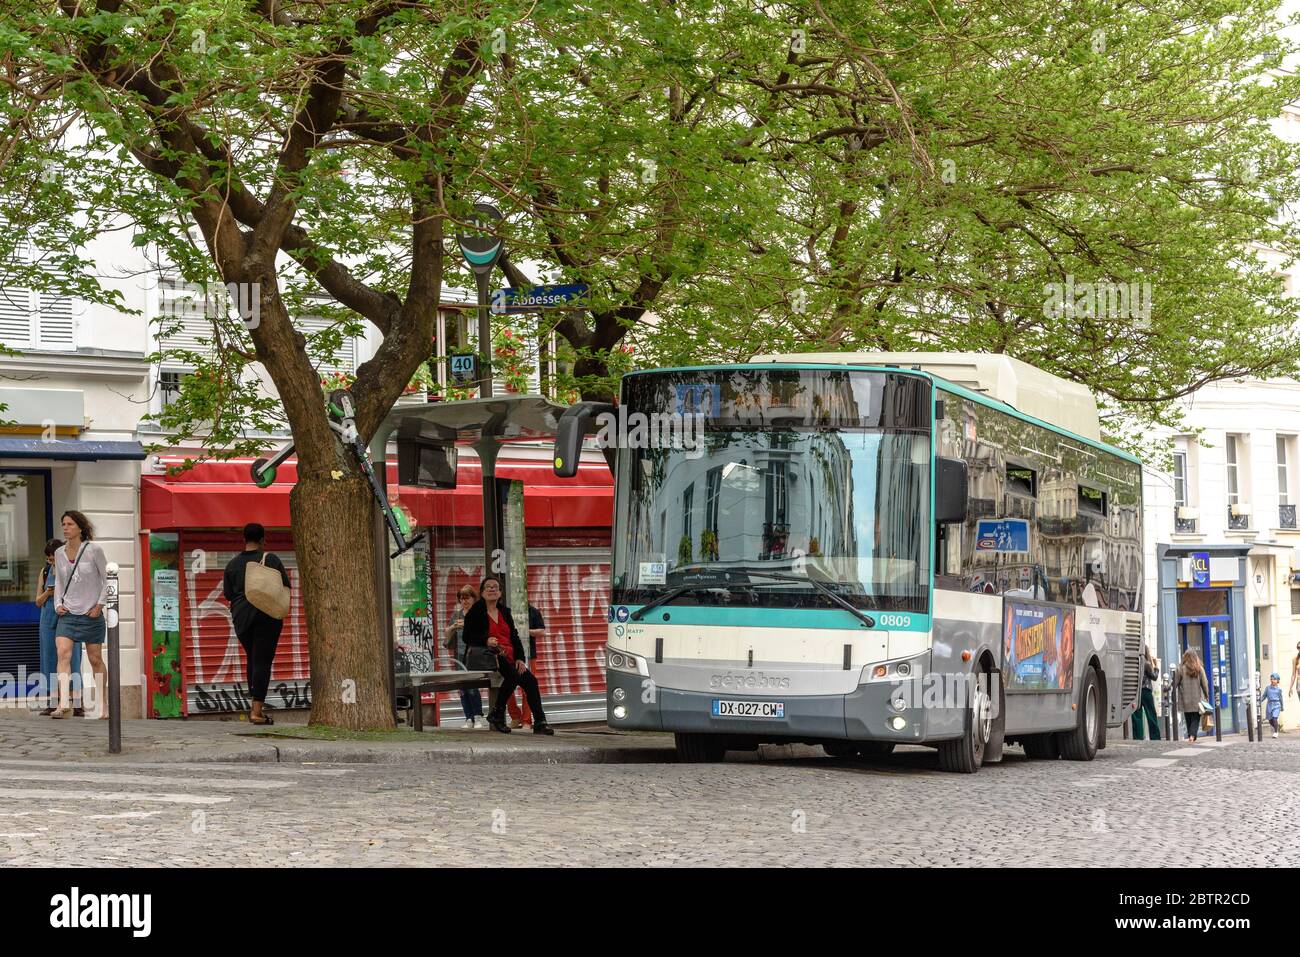 Un autobus pubblico alla stazione della metropolitana Abbesses a Montmartre, Parigi Foto Stock